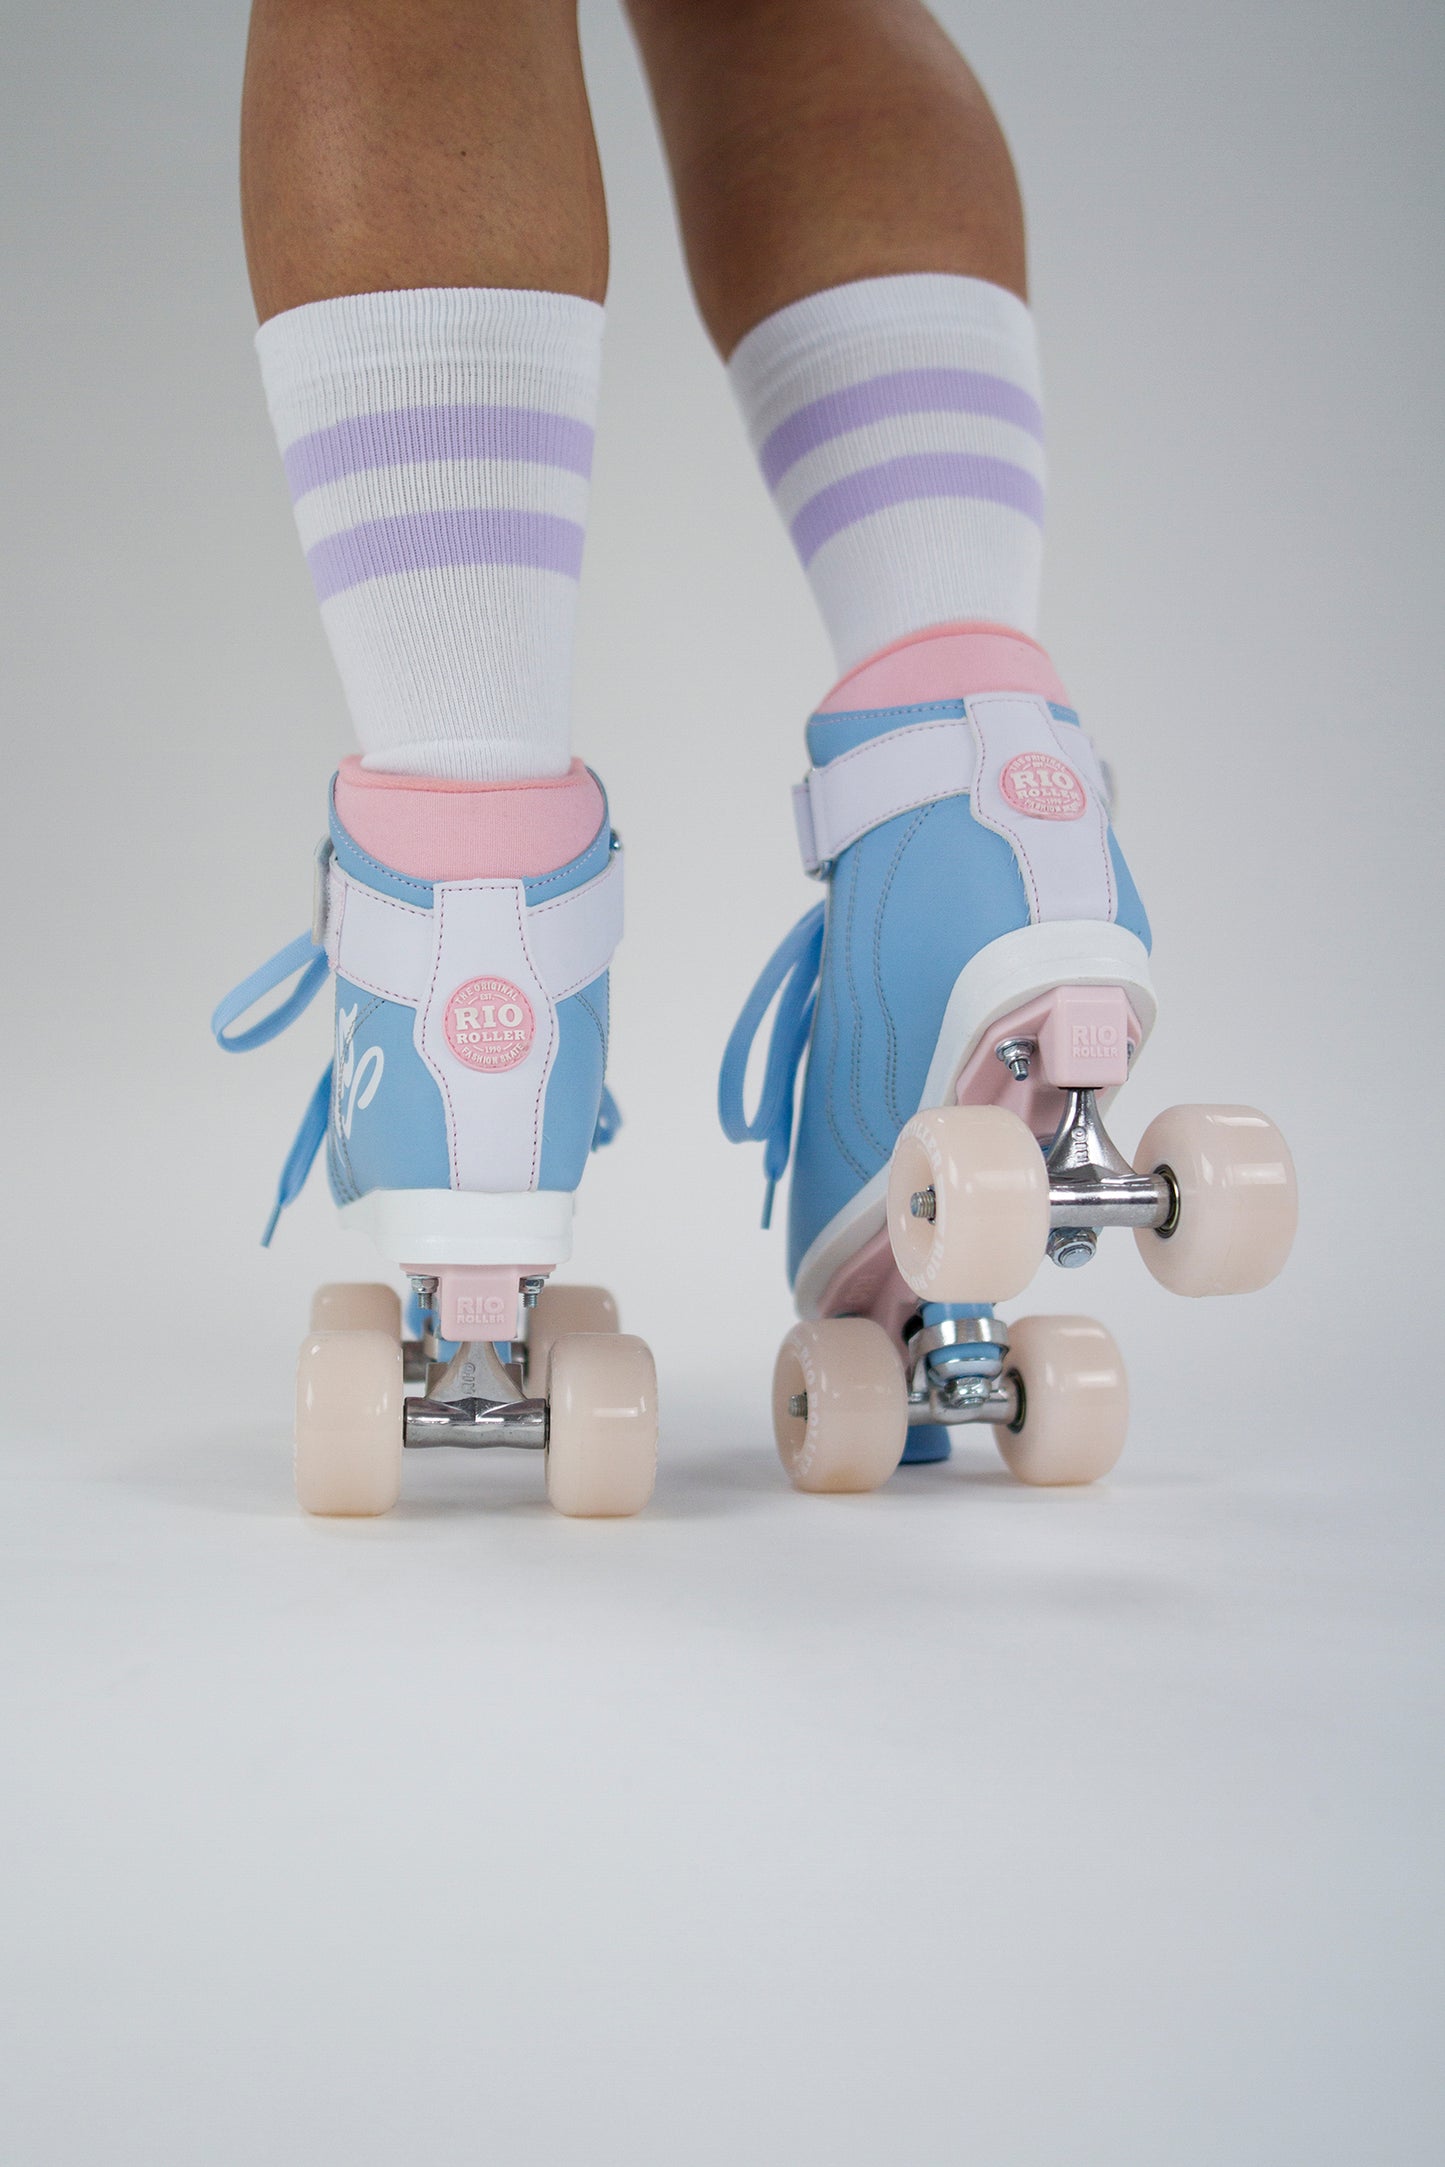 Rio Roller Milkshake Quad Roller Skates - Cotton Candy - Momma Trucker Skates